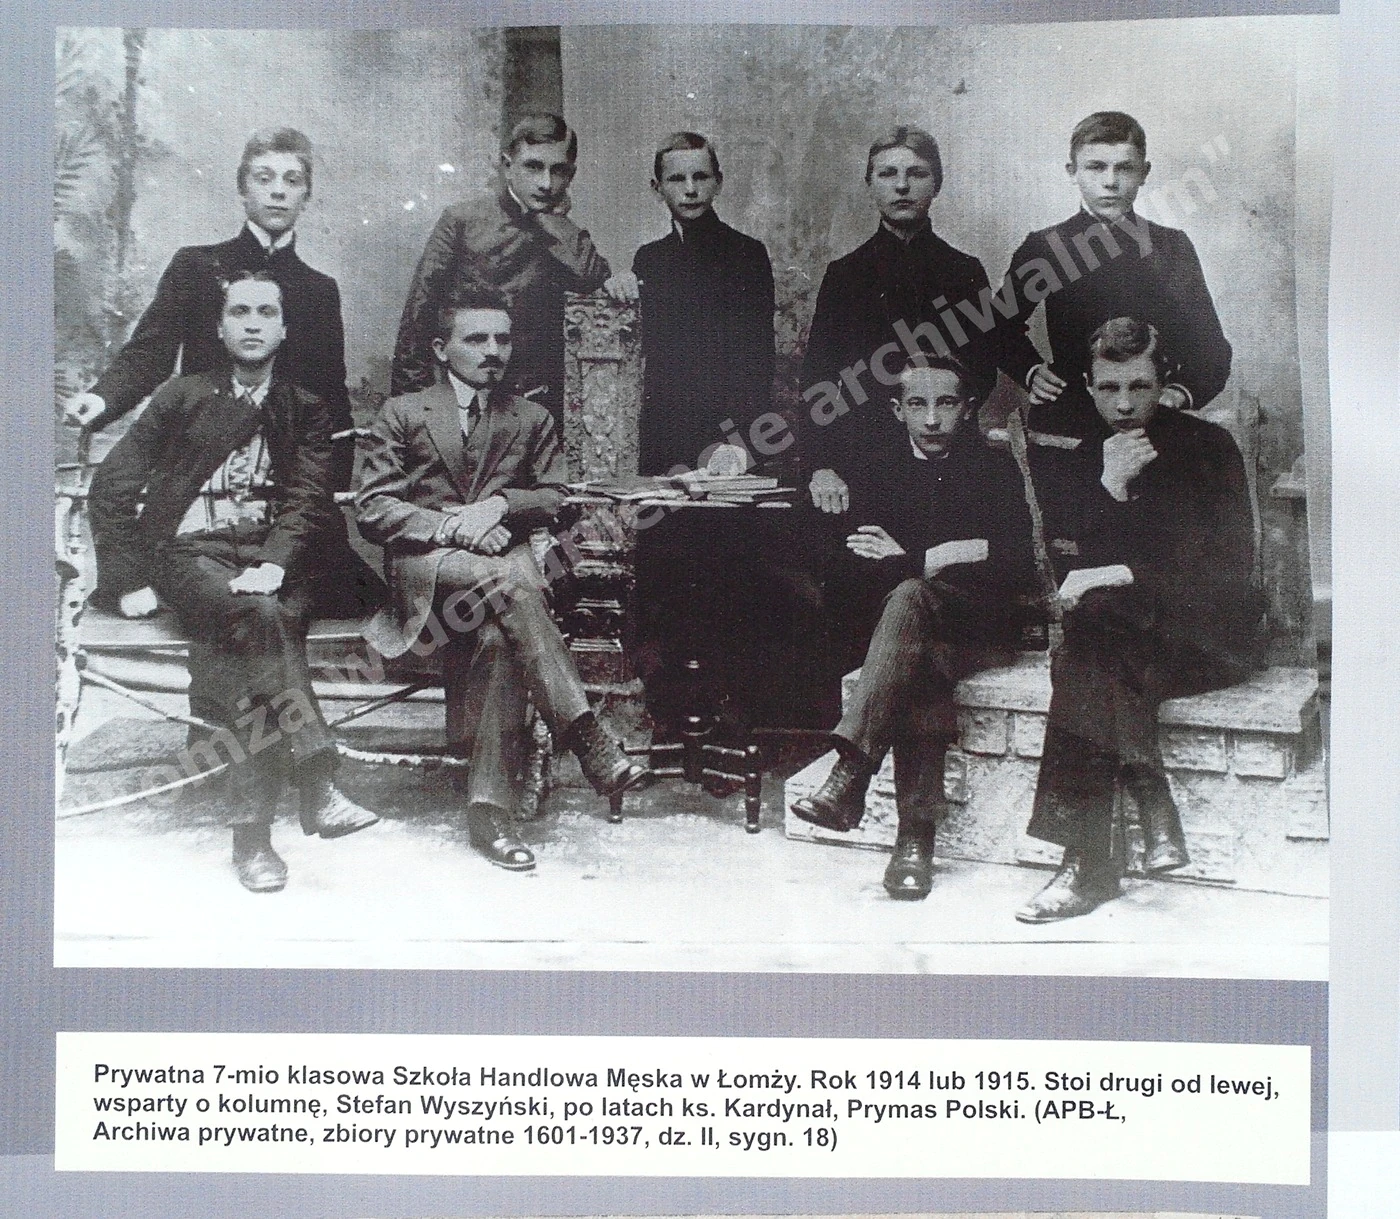 Drugi z lewej w górnym rzędzie: Prymas Polski Stefan Wyszyński w wieku gimnazjalnym